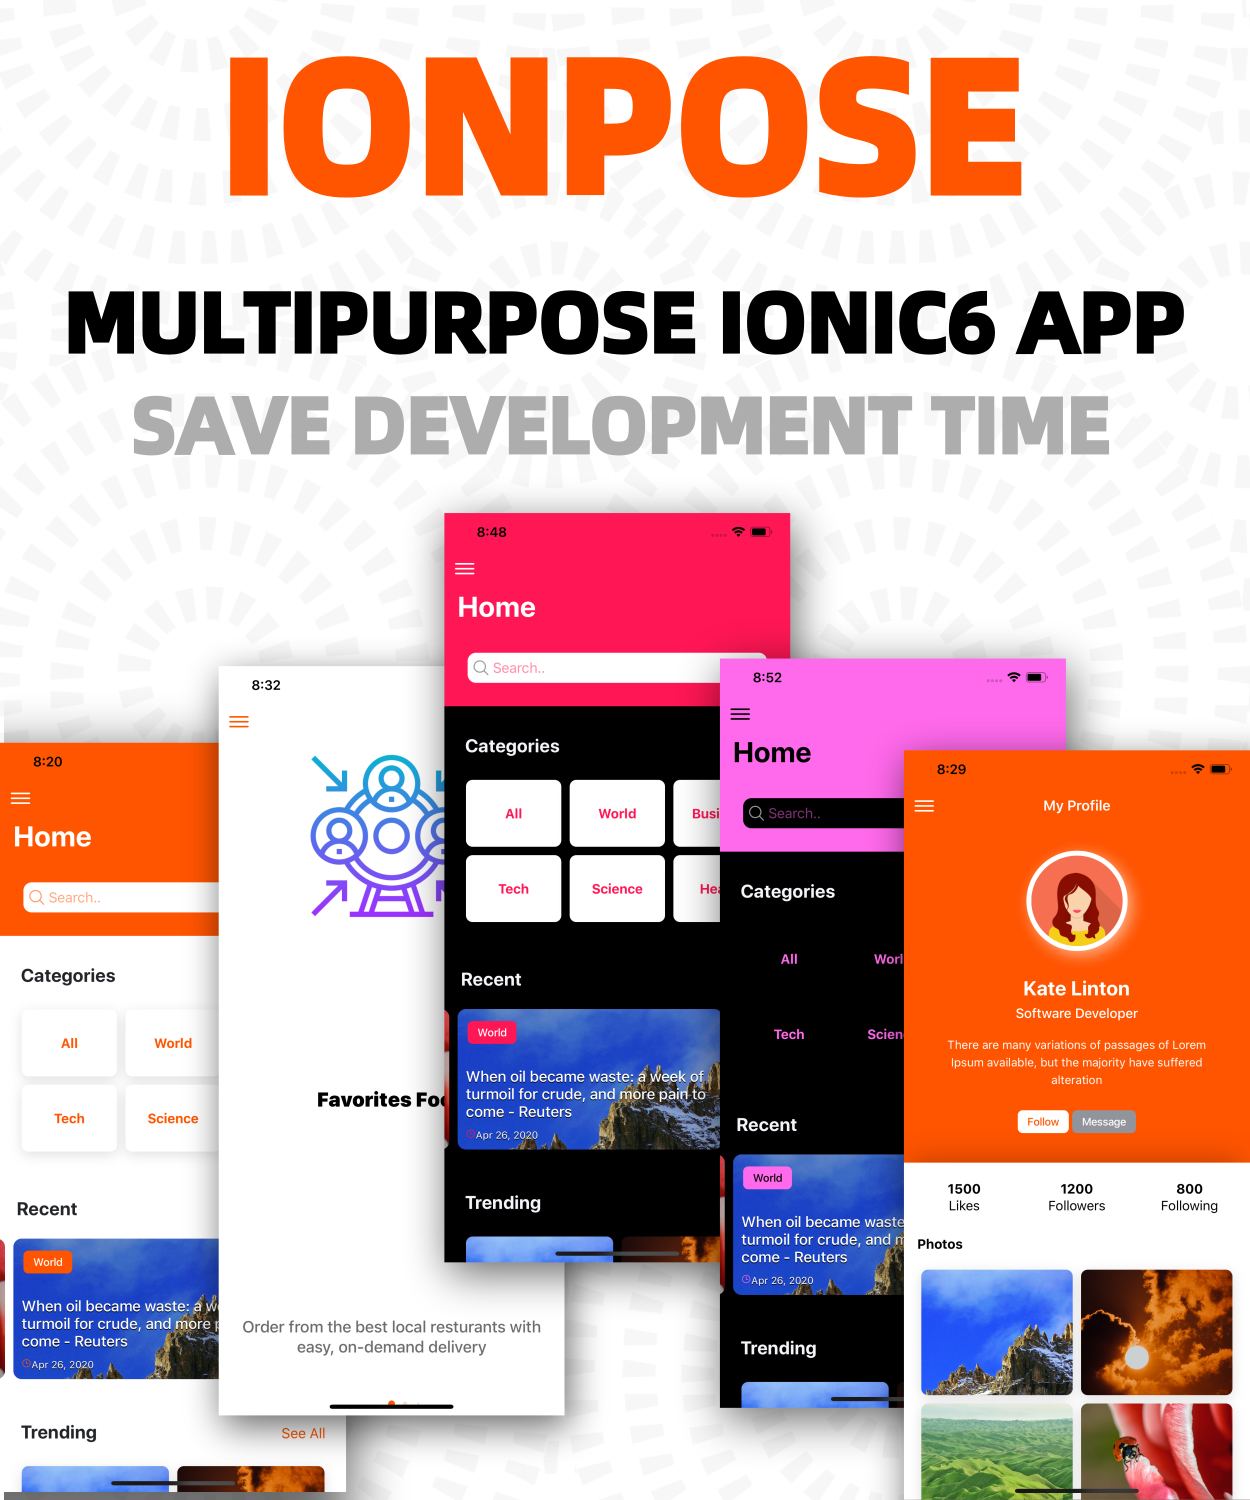 IonPose - Multipurpose Ionic6 App (Support RTL + Dark Mode + 15 Theme Colors + Multi-Language Suppor - 3